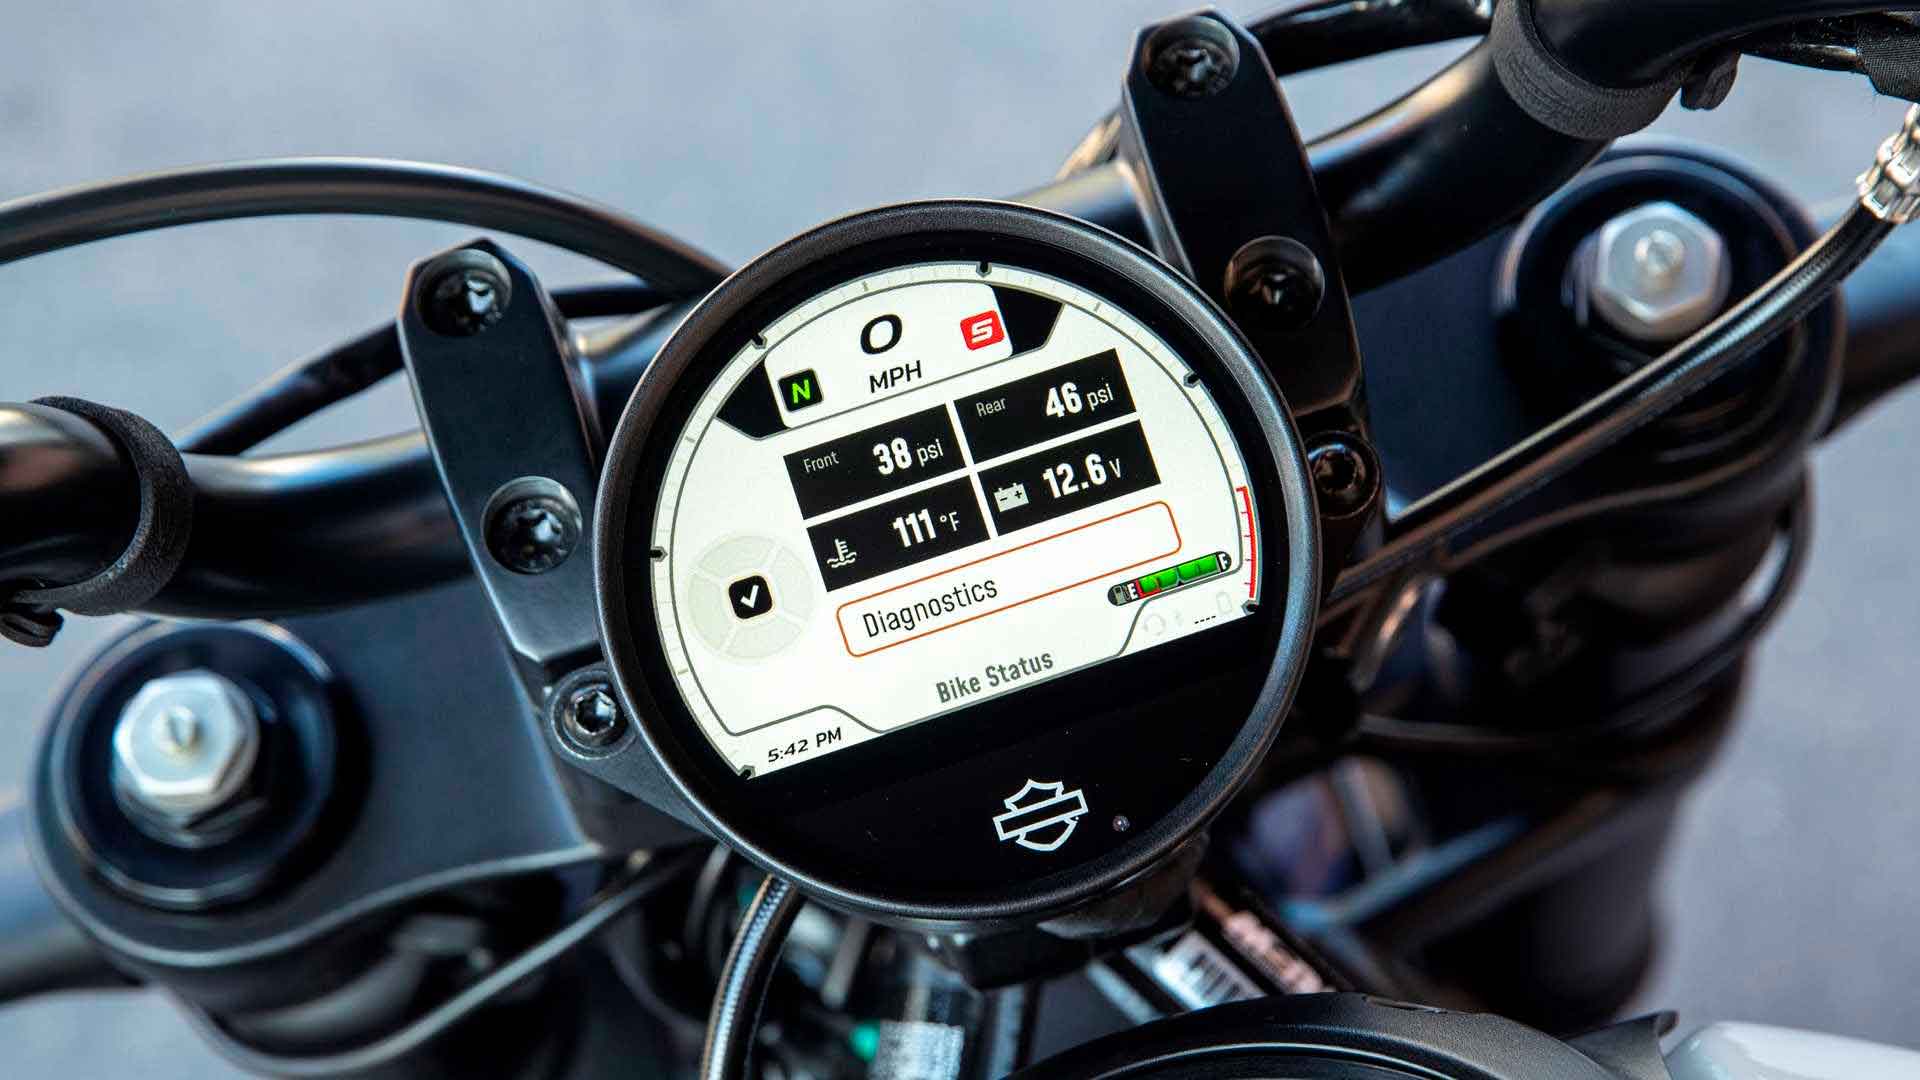 A Harley introduziu tecnologia de ponta no novo modelo, como o painel digital TFT de 4 polegadas